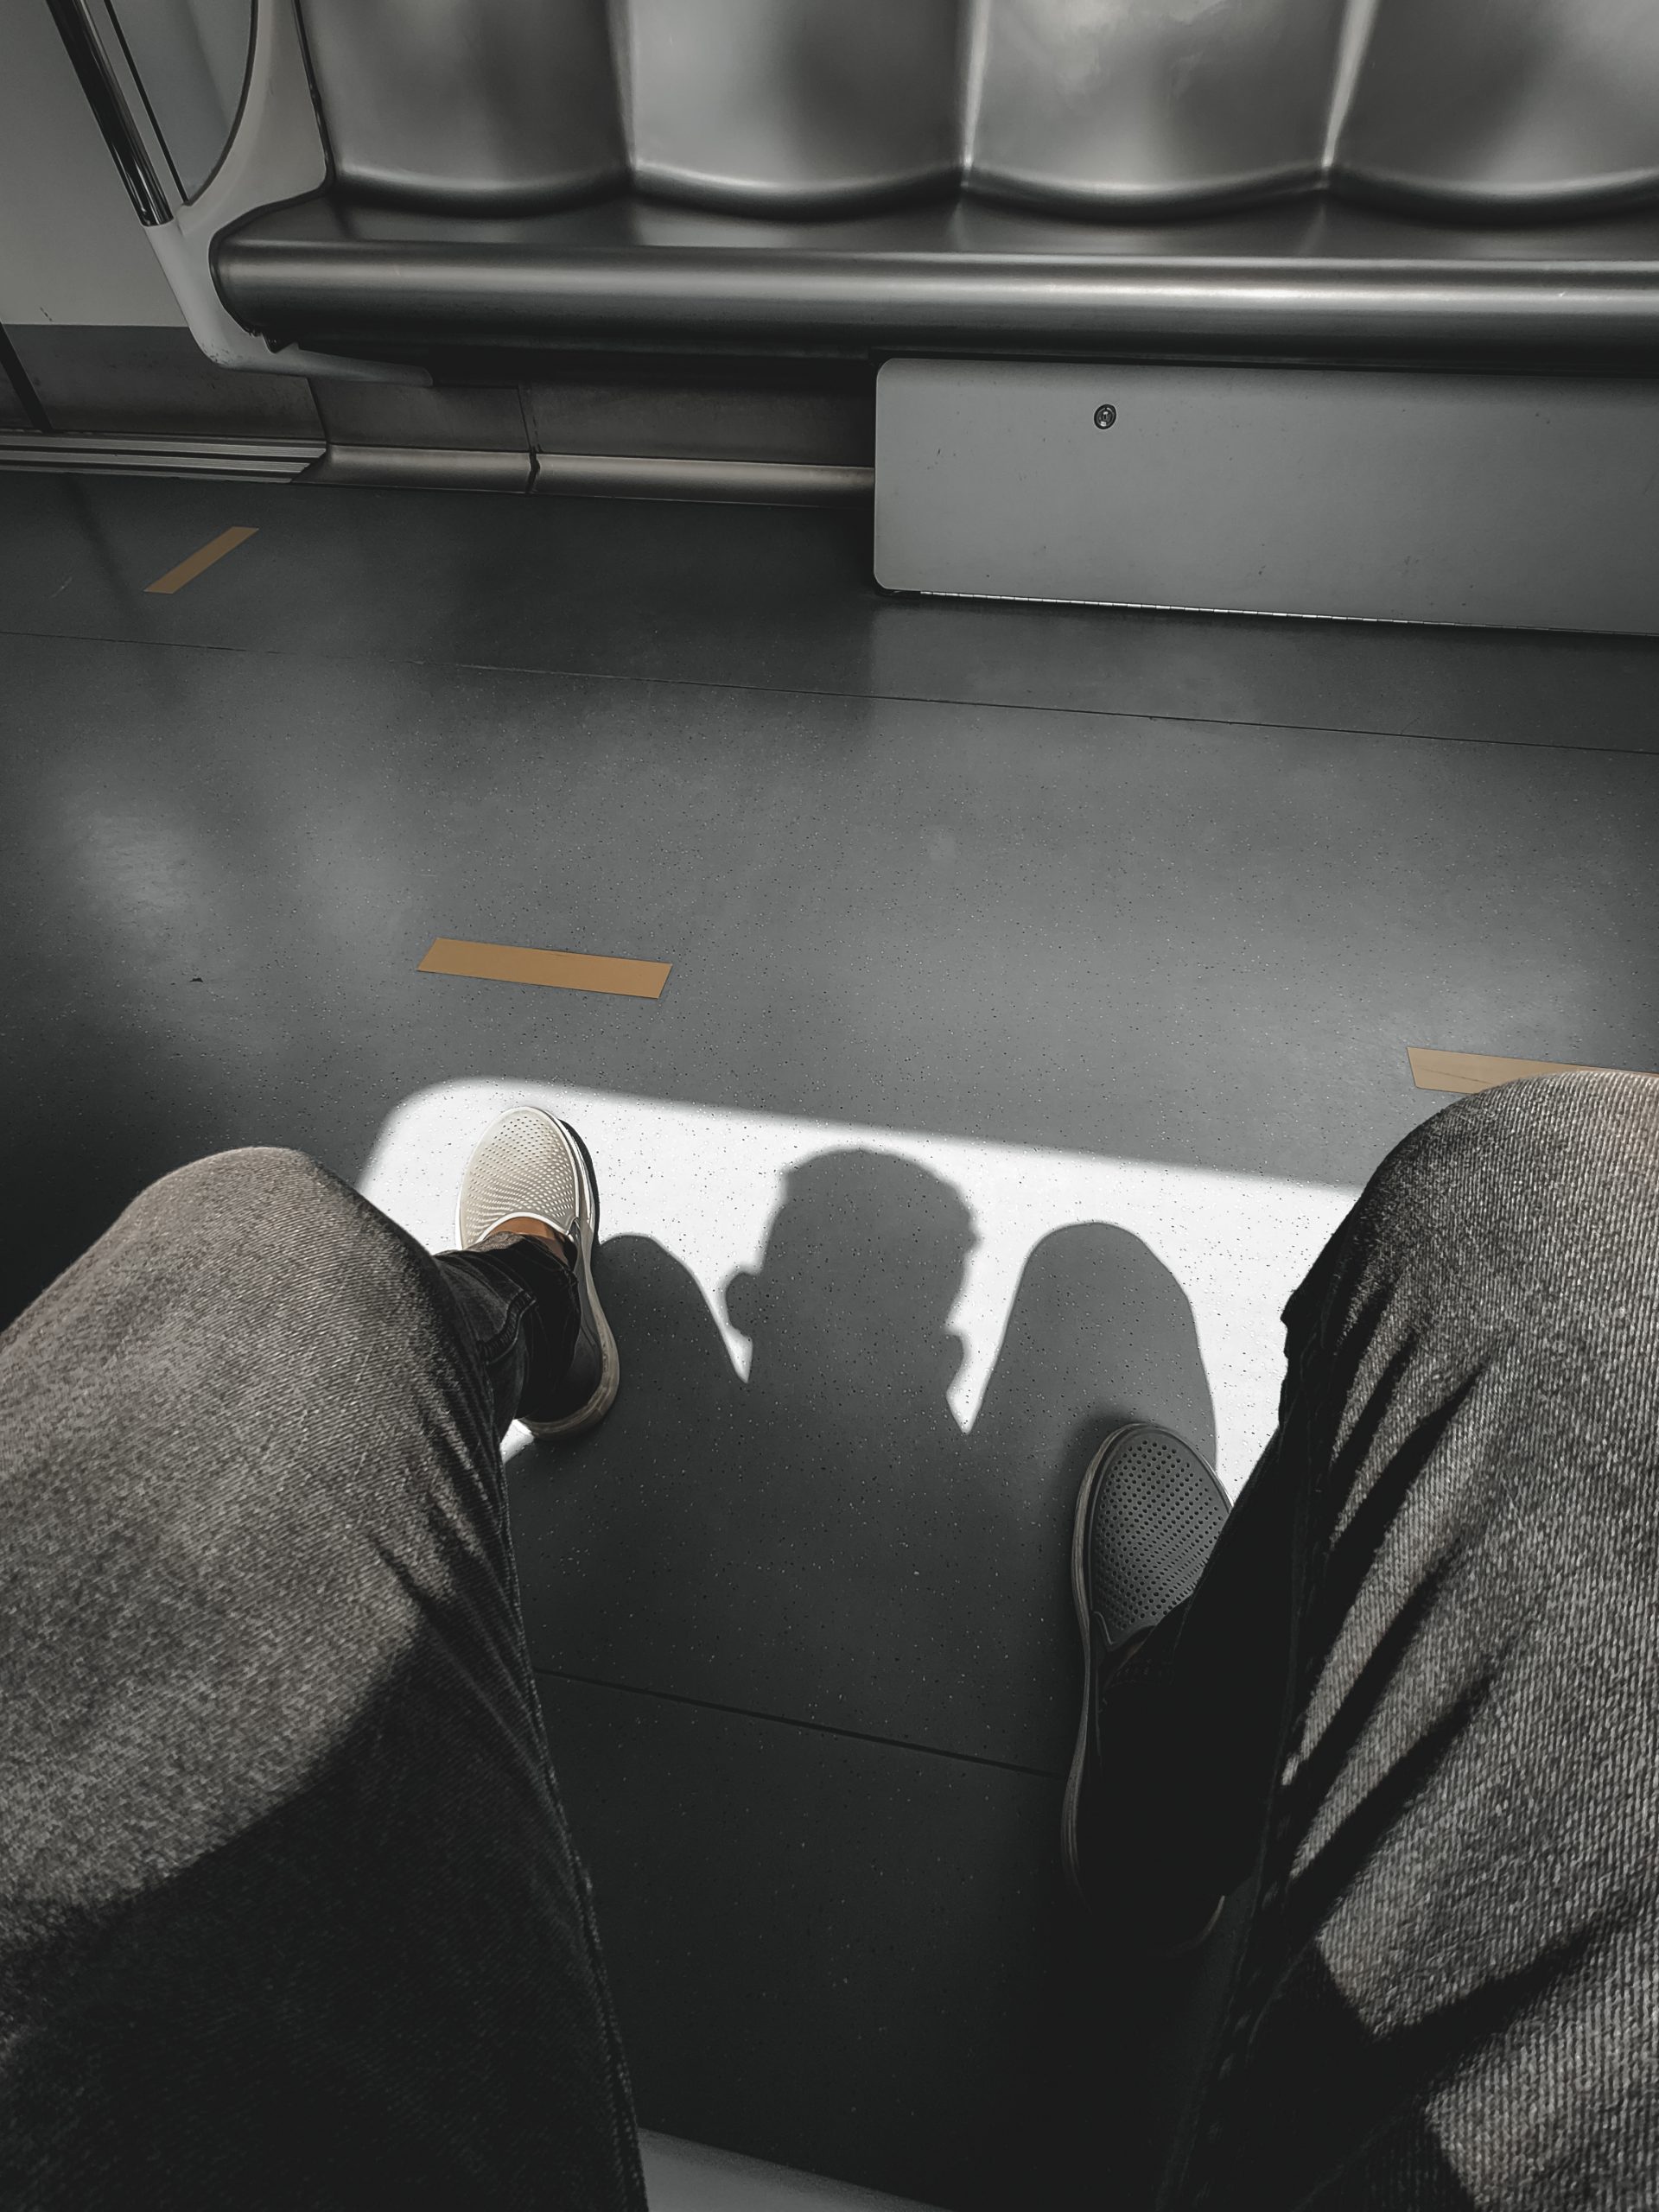 Sitting in metro train